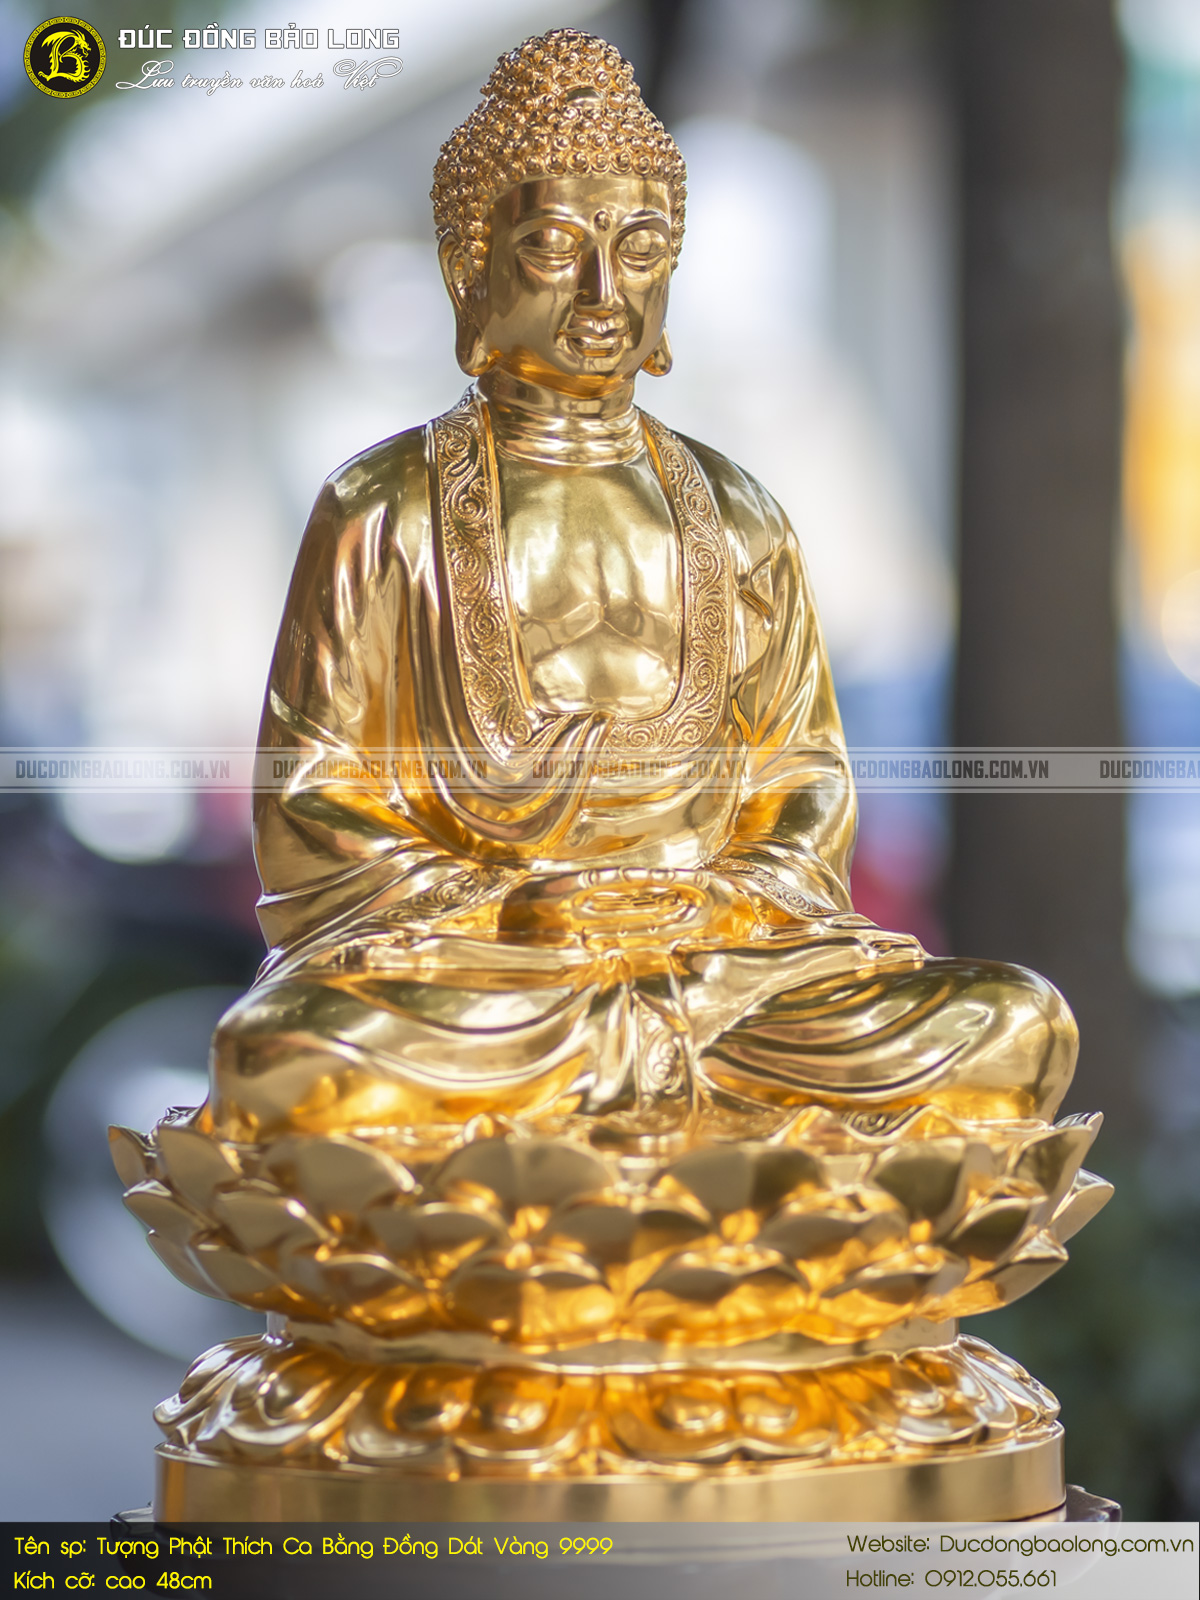 Tượng Phật Thích Ca bằng đồng dát vàng cao 48cm